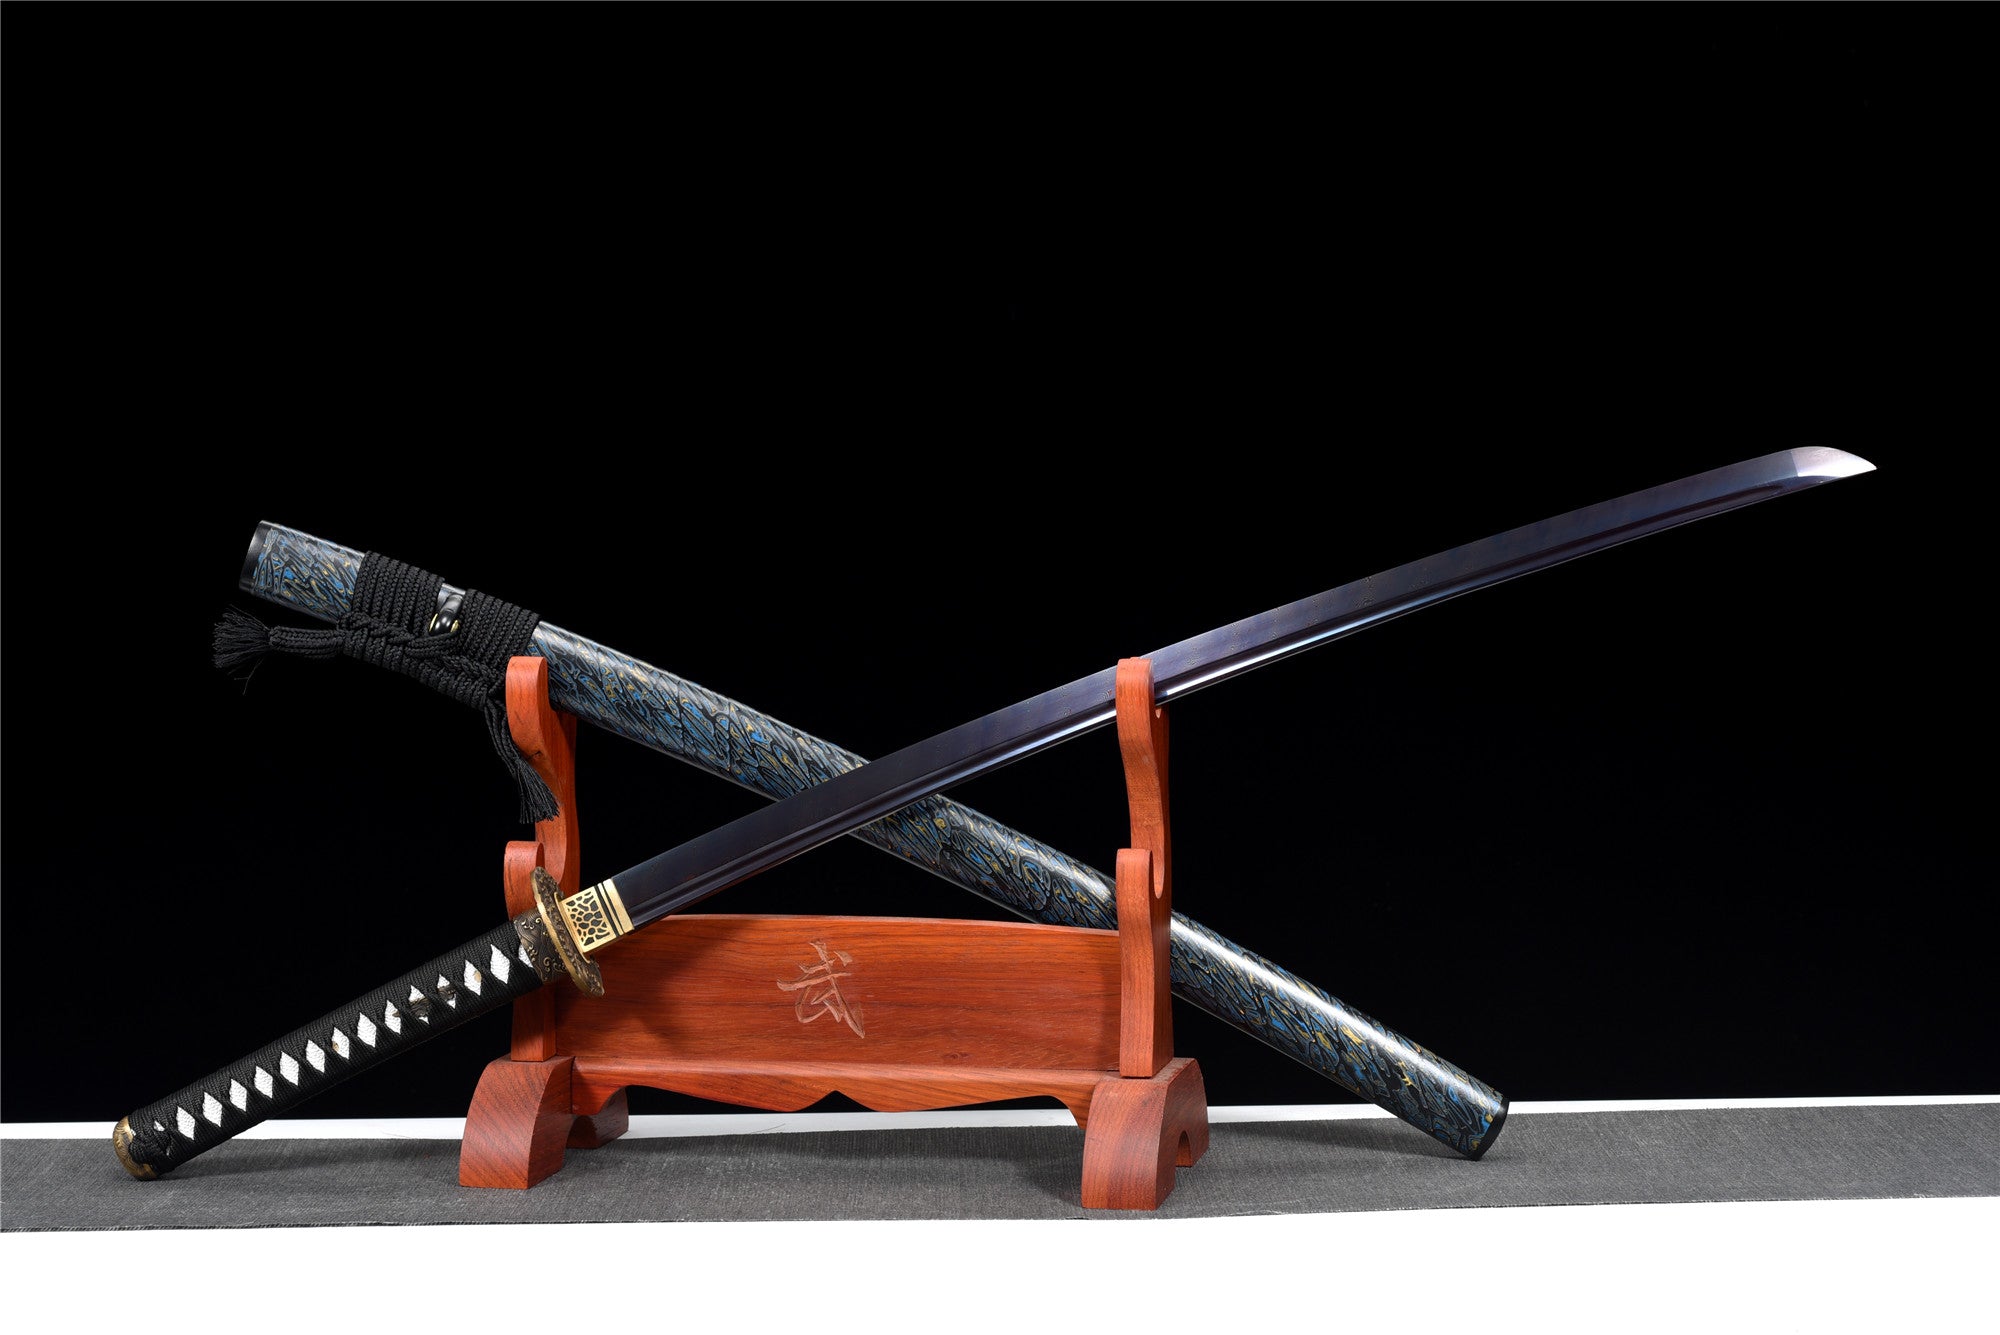 Blue Devils Katana, japanisches Samurai-Schwert, echtes handgefertigtes Katana, geröstete Klinge mit blauem Muster, Hochleistungs-Musterstahl